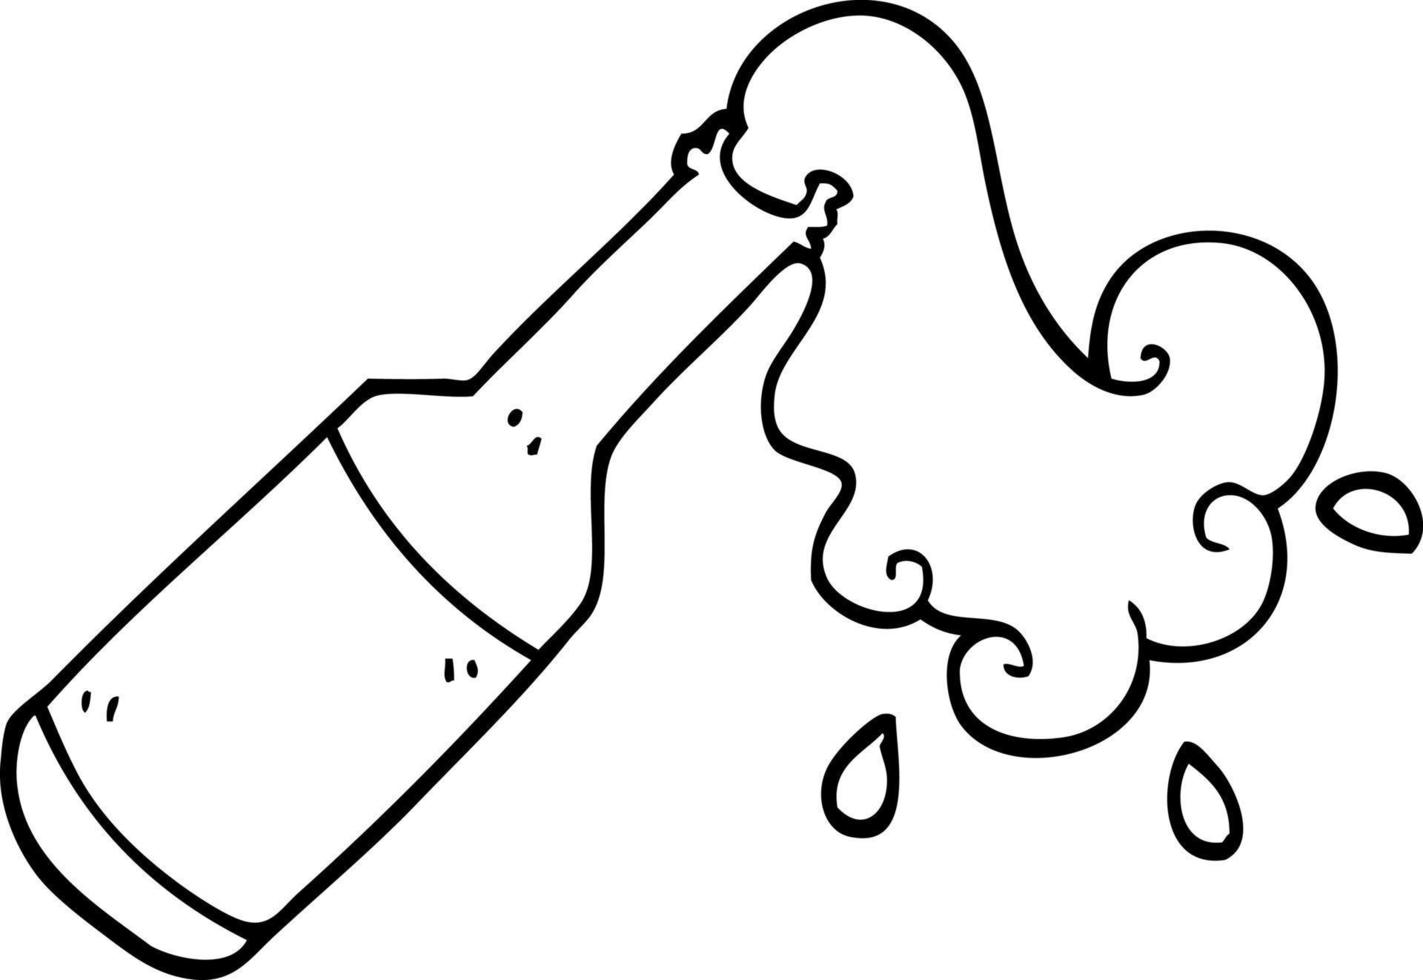 Schwarz-Weiß-Cartoon-Schaumflasche vektor